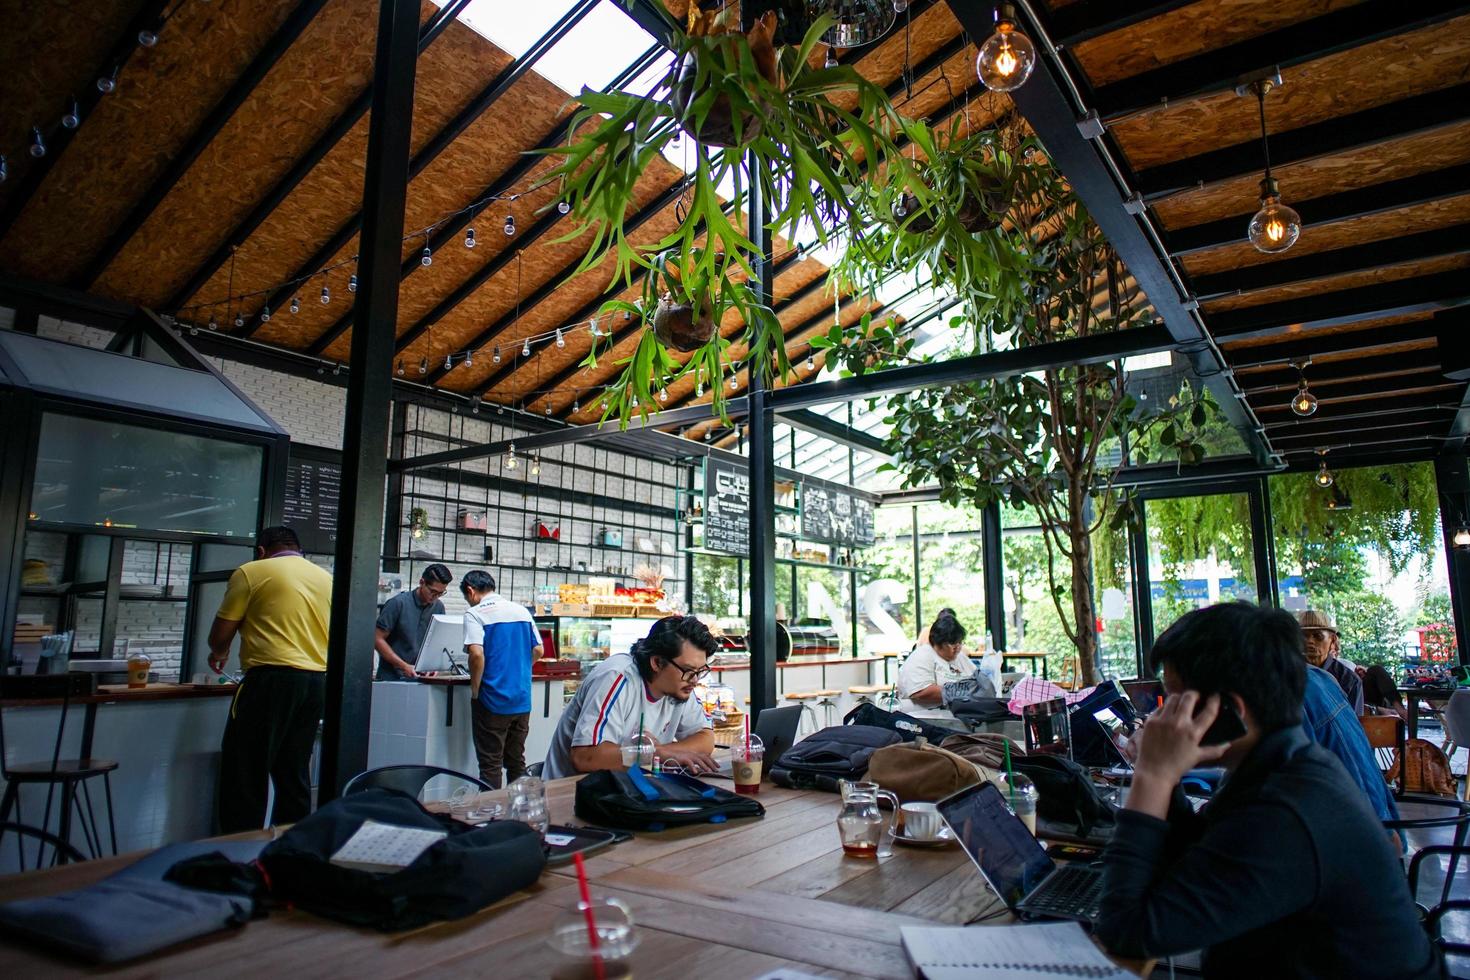 Banguecoque, Tailândia, 21 de março de 2018 - lotado de pessoas sentadas e trabalhando no café. estilo de vida das pessoas que trabalham fora do escritório. co conceito de espaço de trabalho foto